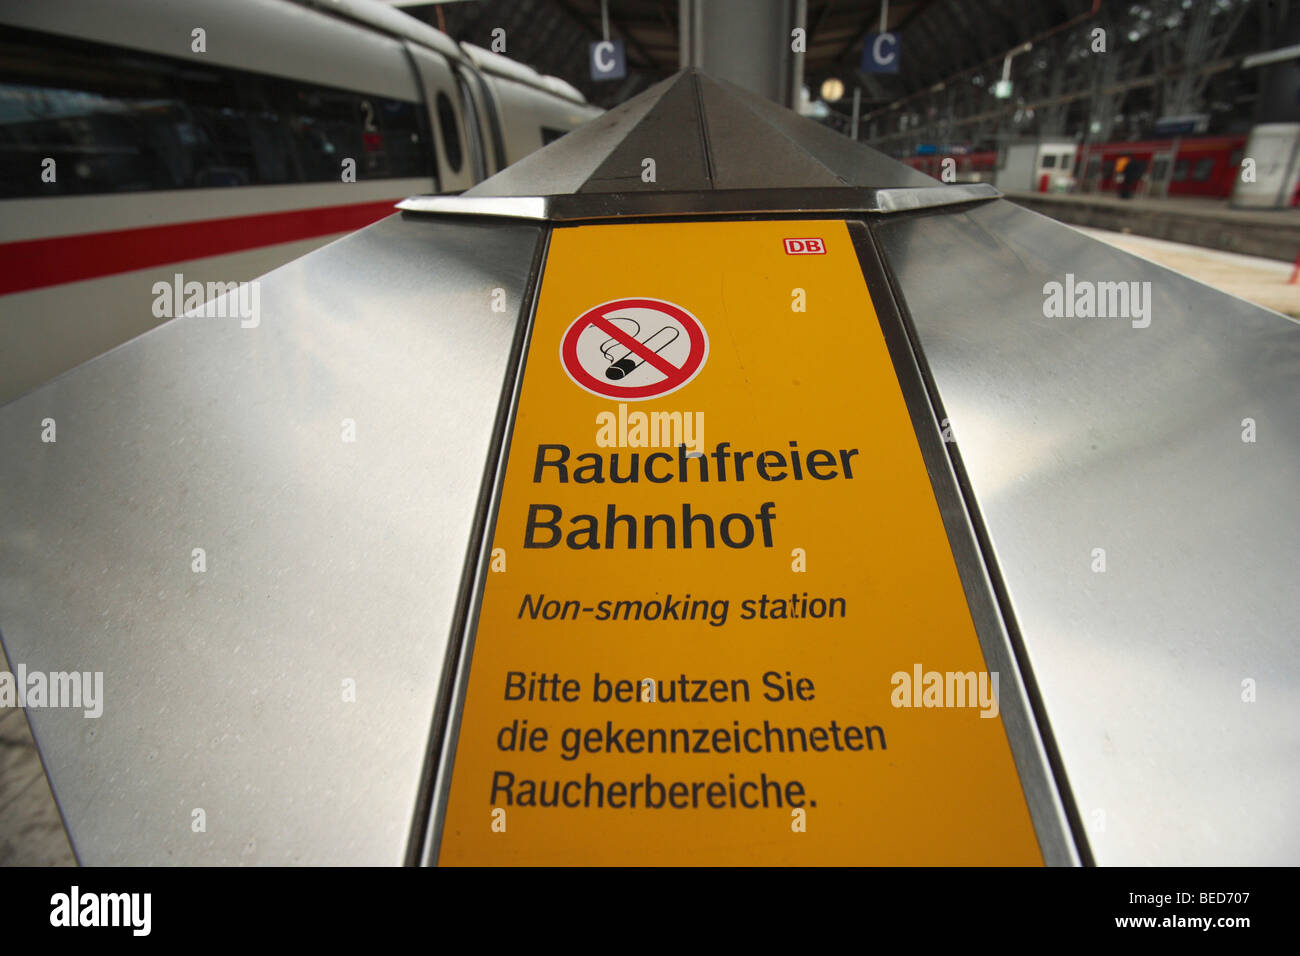 Schilder, Rauchfreier Bahnhof, Deutsch für rauchfreien Bahnhof, im Frankfurter Hauptbahnhof, Frankfurt am Main, Hessen, Deutschland Stockfoto